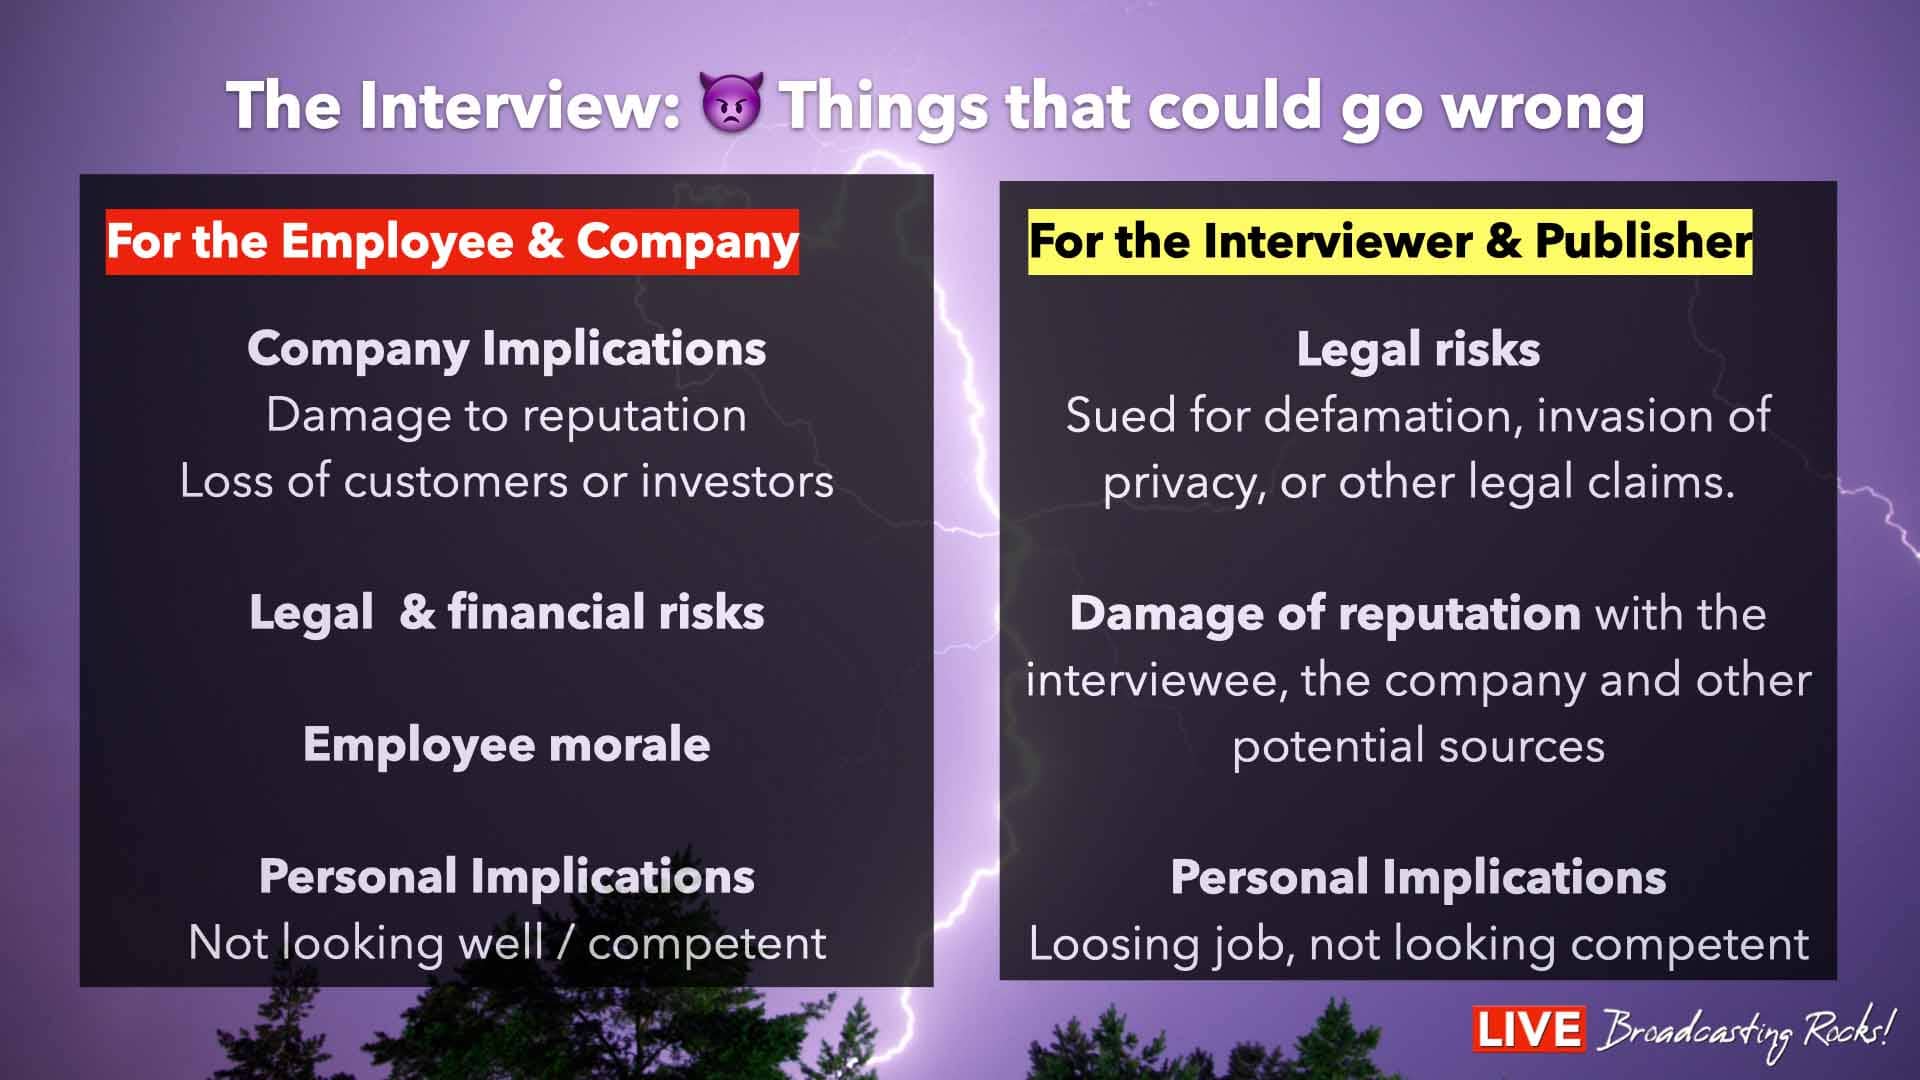 Quando un'intervista va male, può comportare diversi rischi per l'azienda e per il giornalista. Ecco alcuni dei rischi potenziali